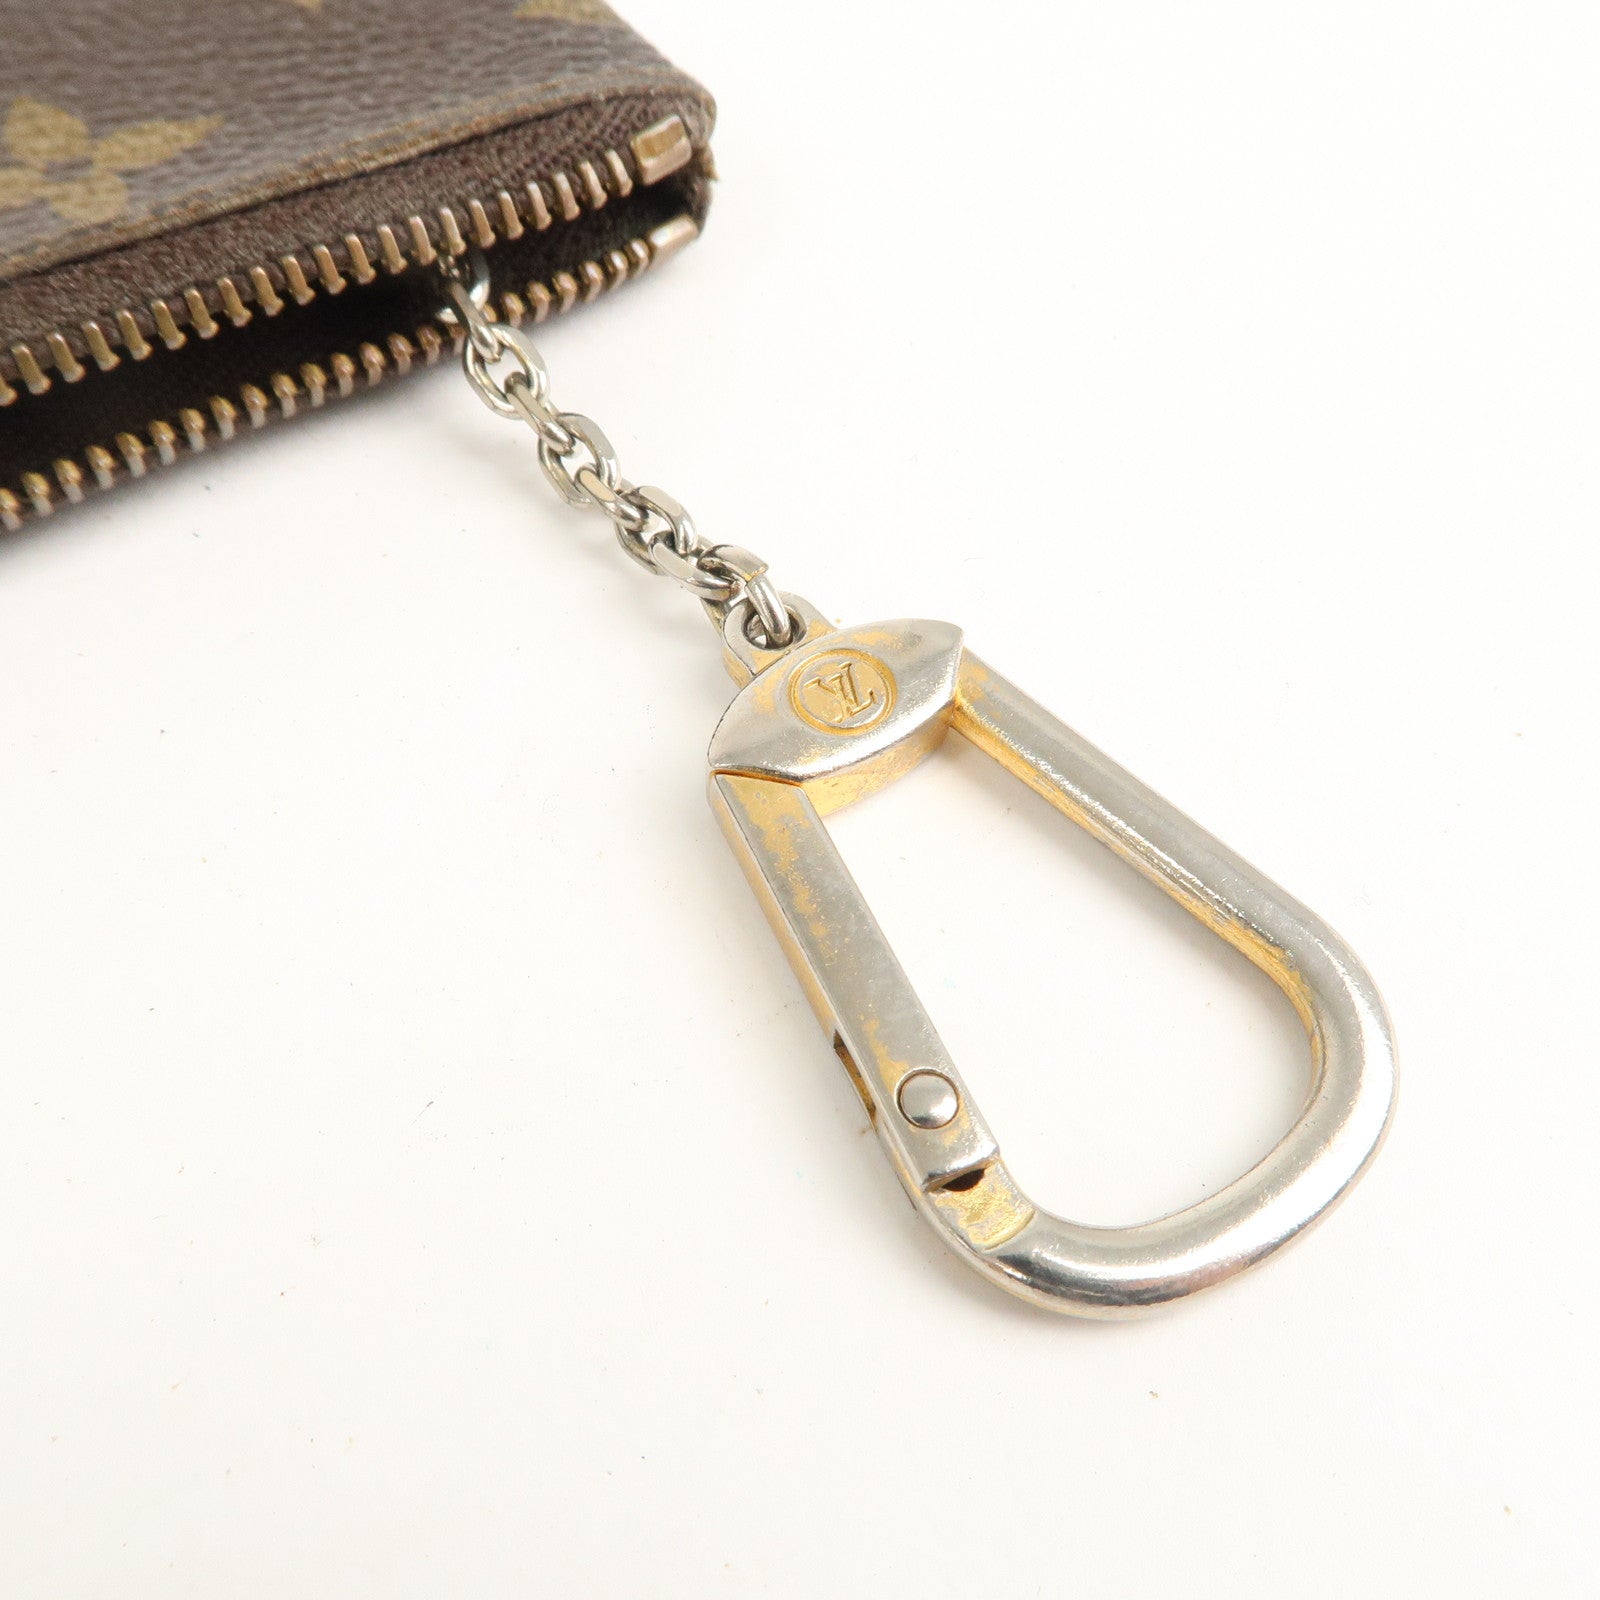 Louis-Vuitton-Monogram-Set-of-2-Pochette-Cles-Coin-Case-M62650